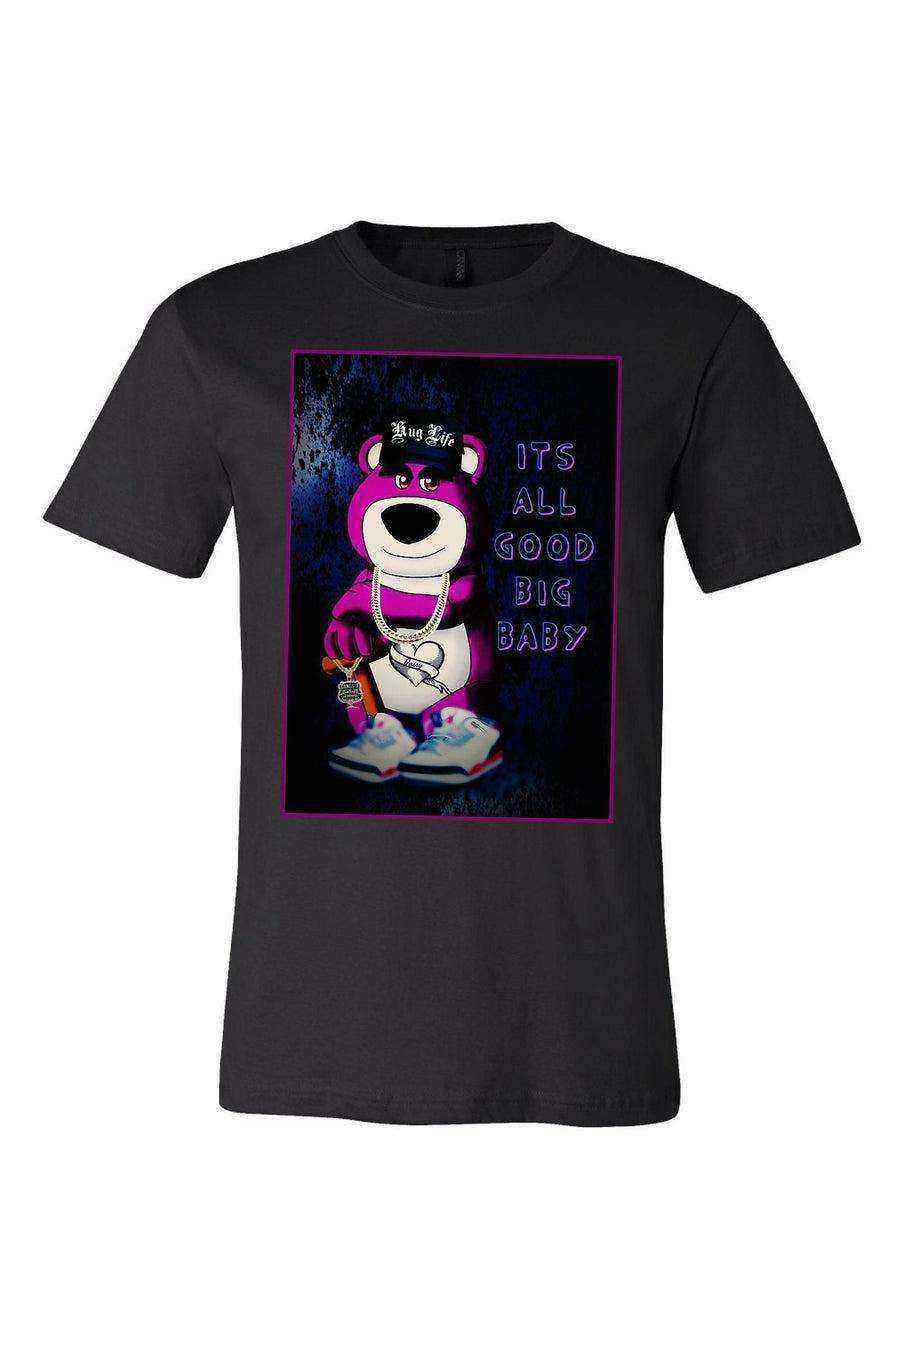 Notorious LOTSO Bear Shirt | Lotso Bear Tee | Toy Story - Dylan's Tees